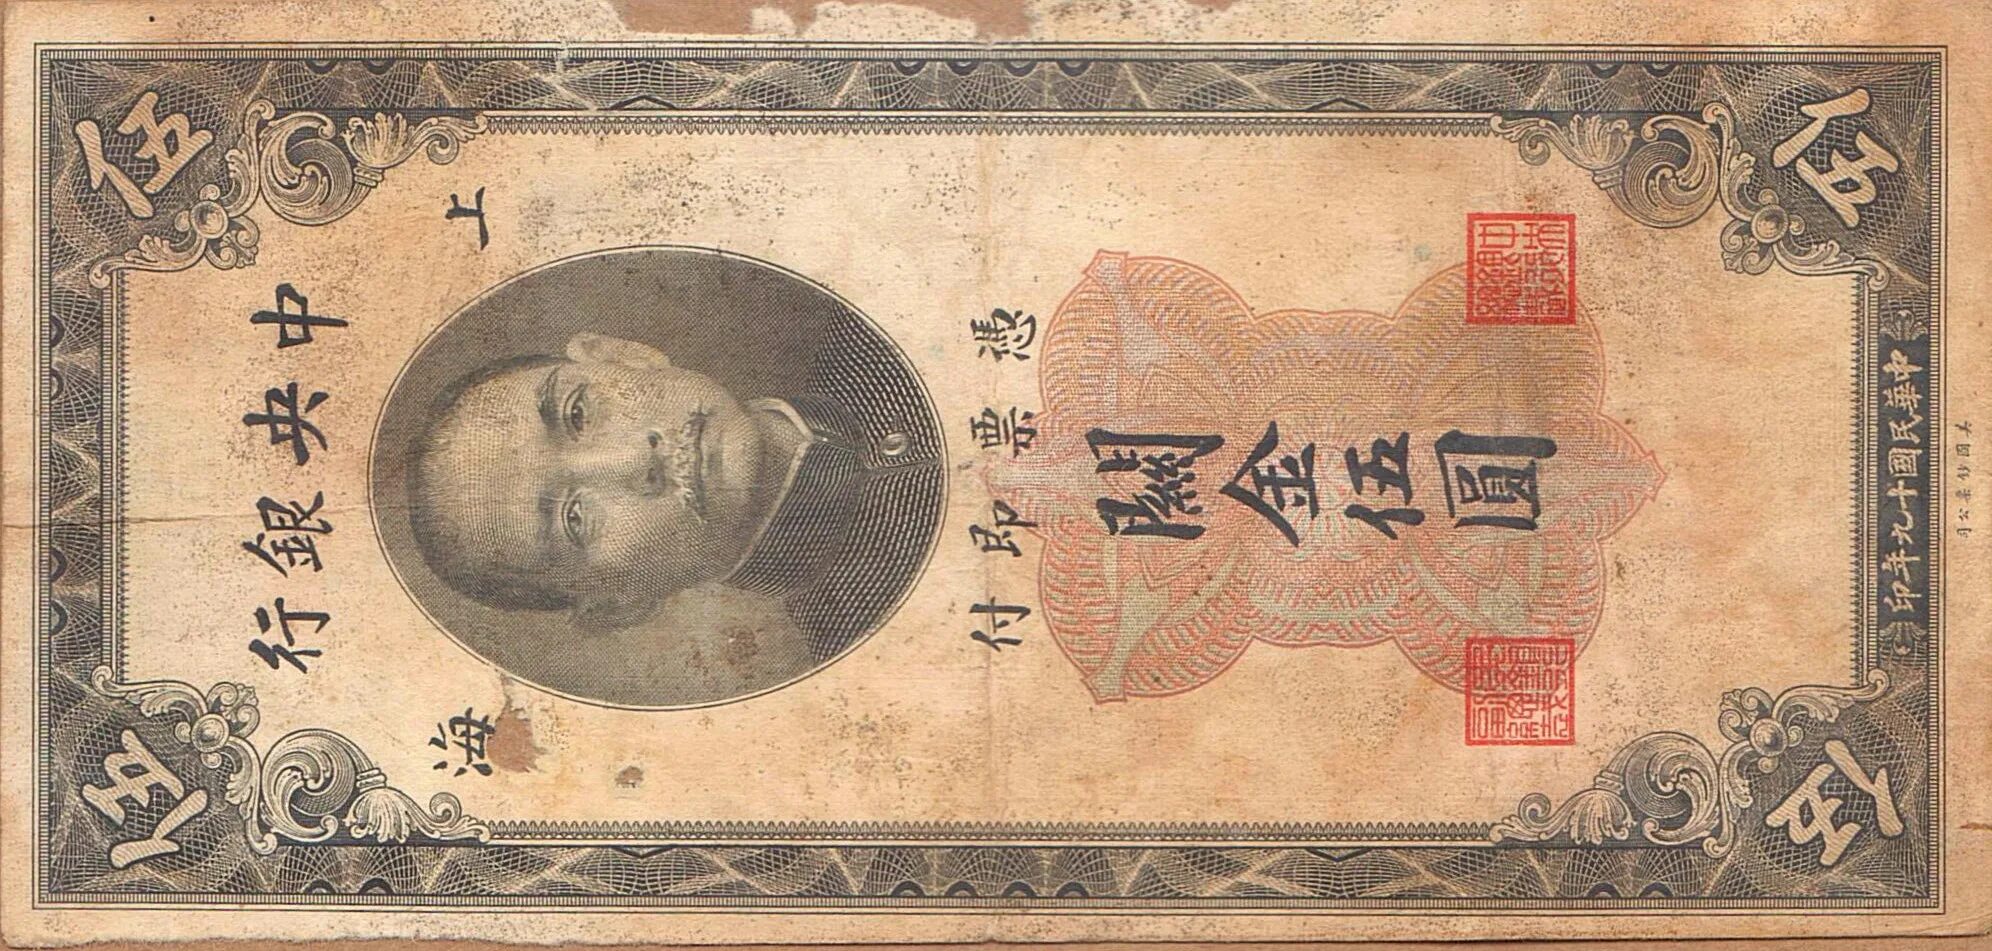 Банкнота Китай 1930. Китайская банкнота 5. Деньги Китая 1930 года. 5 Юаней купюра.